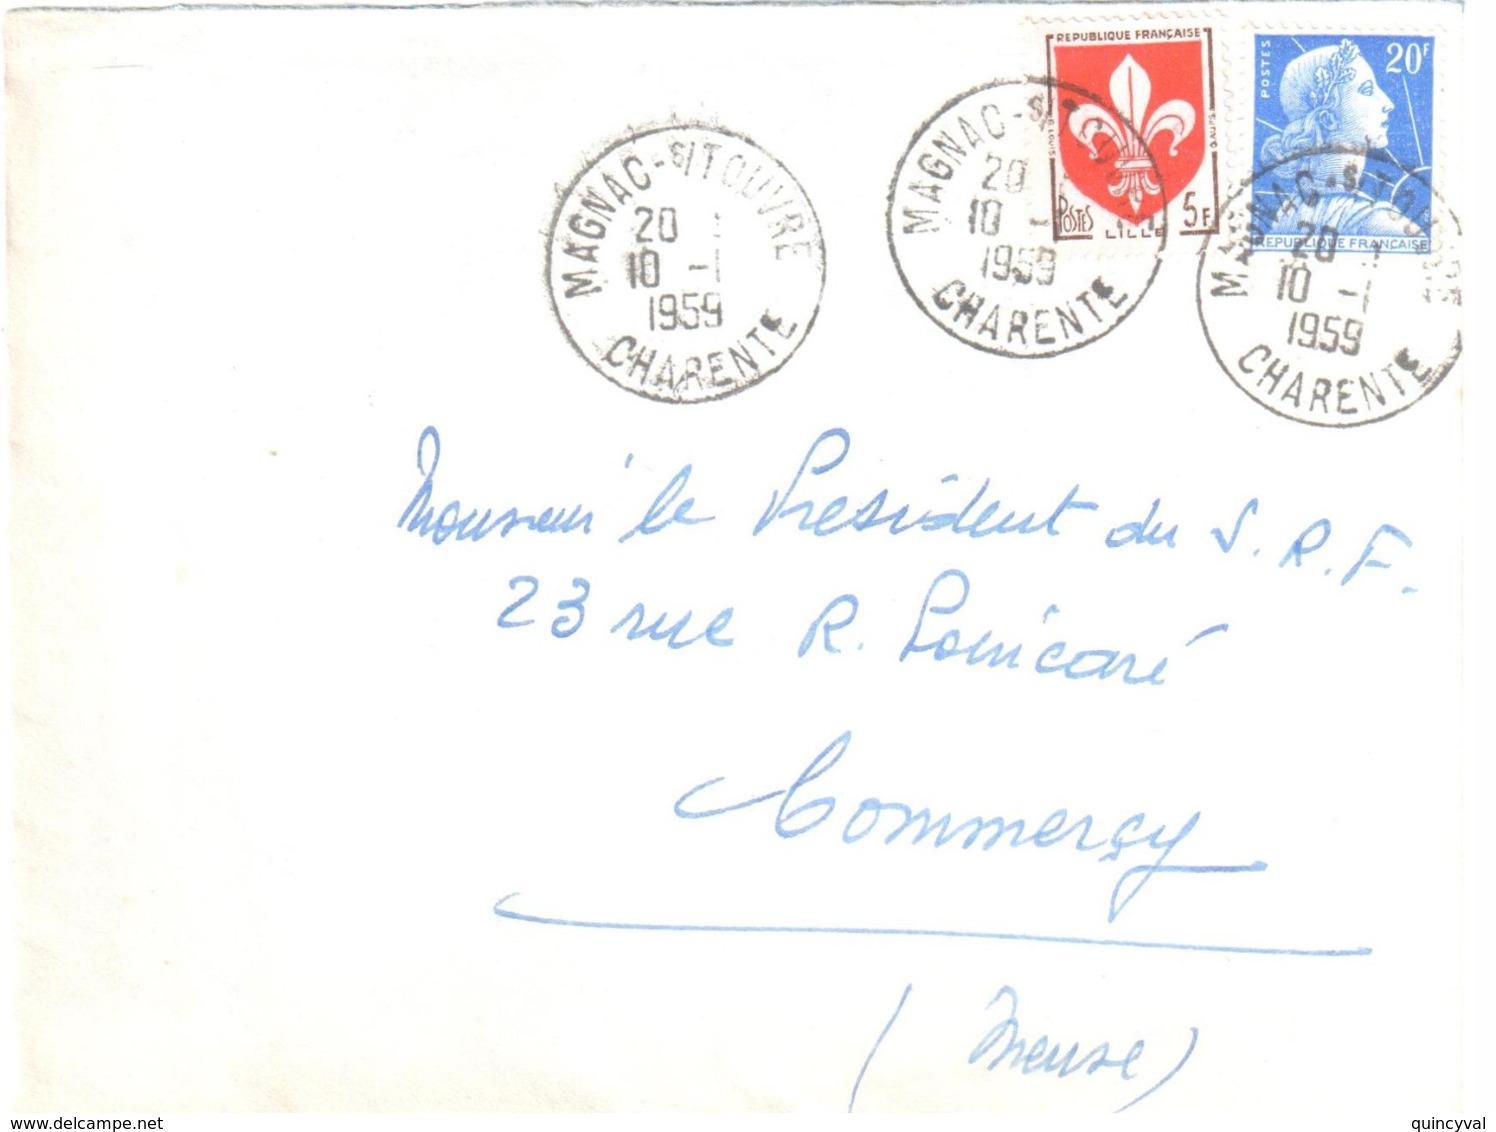 MAGNAC Sur TOUVRE Charente Lettre 20 F Muller 5 F Blason Lille Yv 1011B 1186 Ob 10 1 1959 Dest Commercy Meuse - Storia Postale